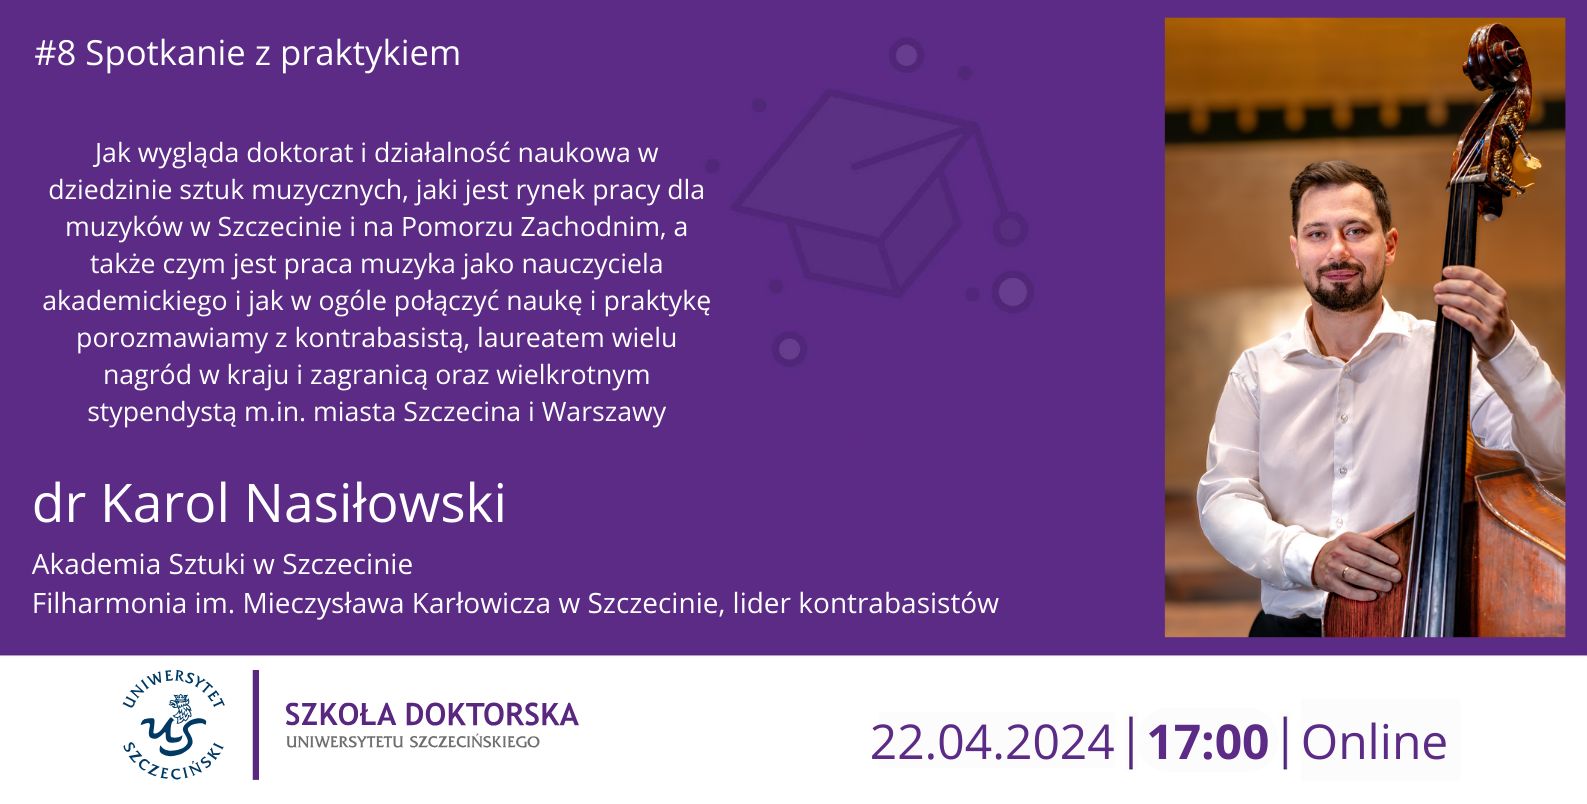 Spotkanie z Praktykiem – dr Karol Nasiłowski